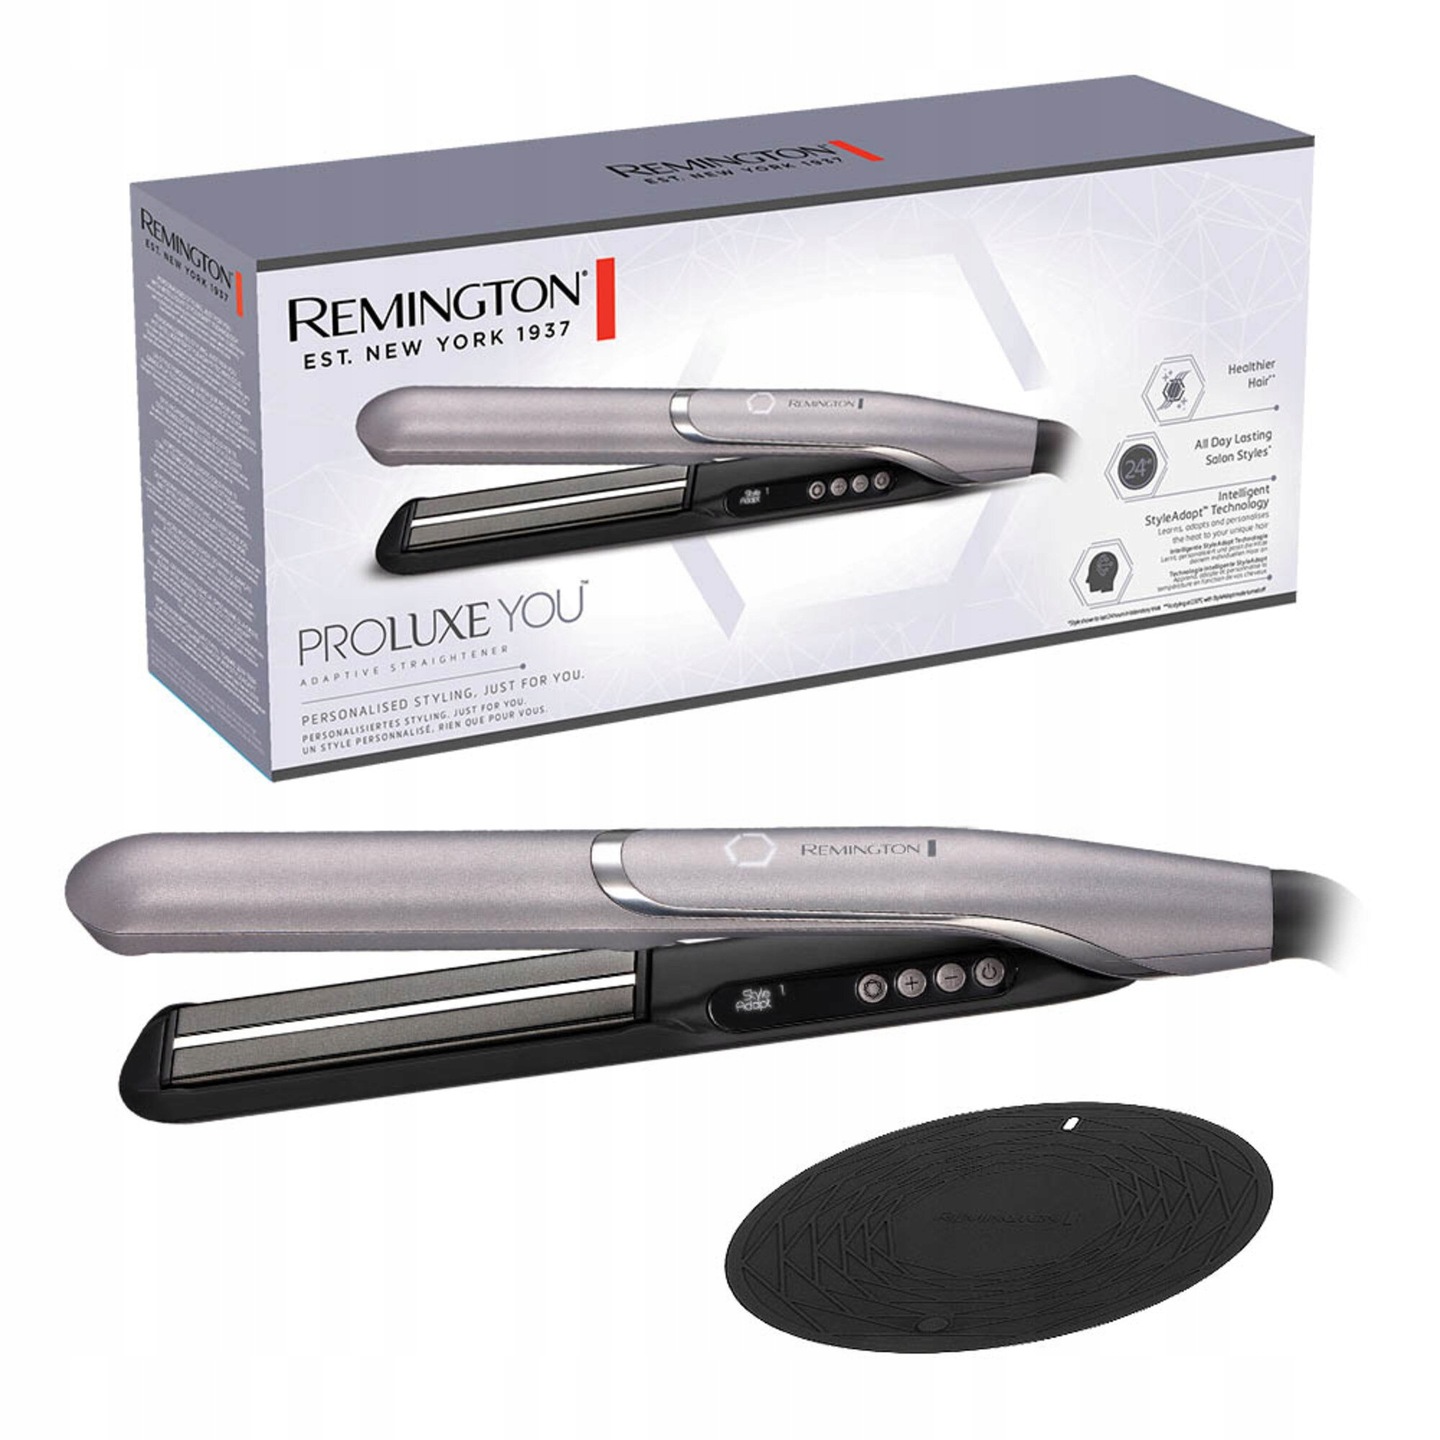 Выпрямитель для волос remington s9880 proluxe you недорого ➤➤➤ Интернет  магазин DARSTAR